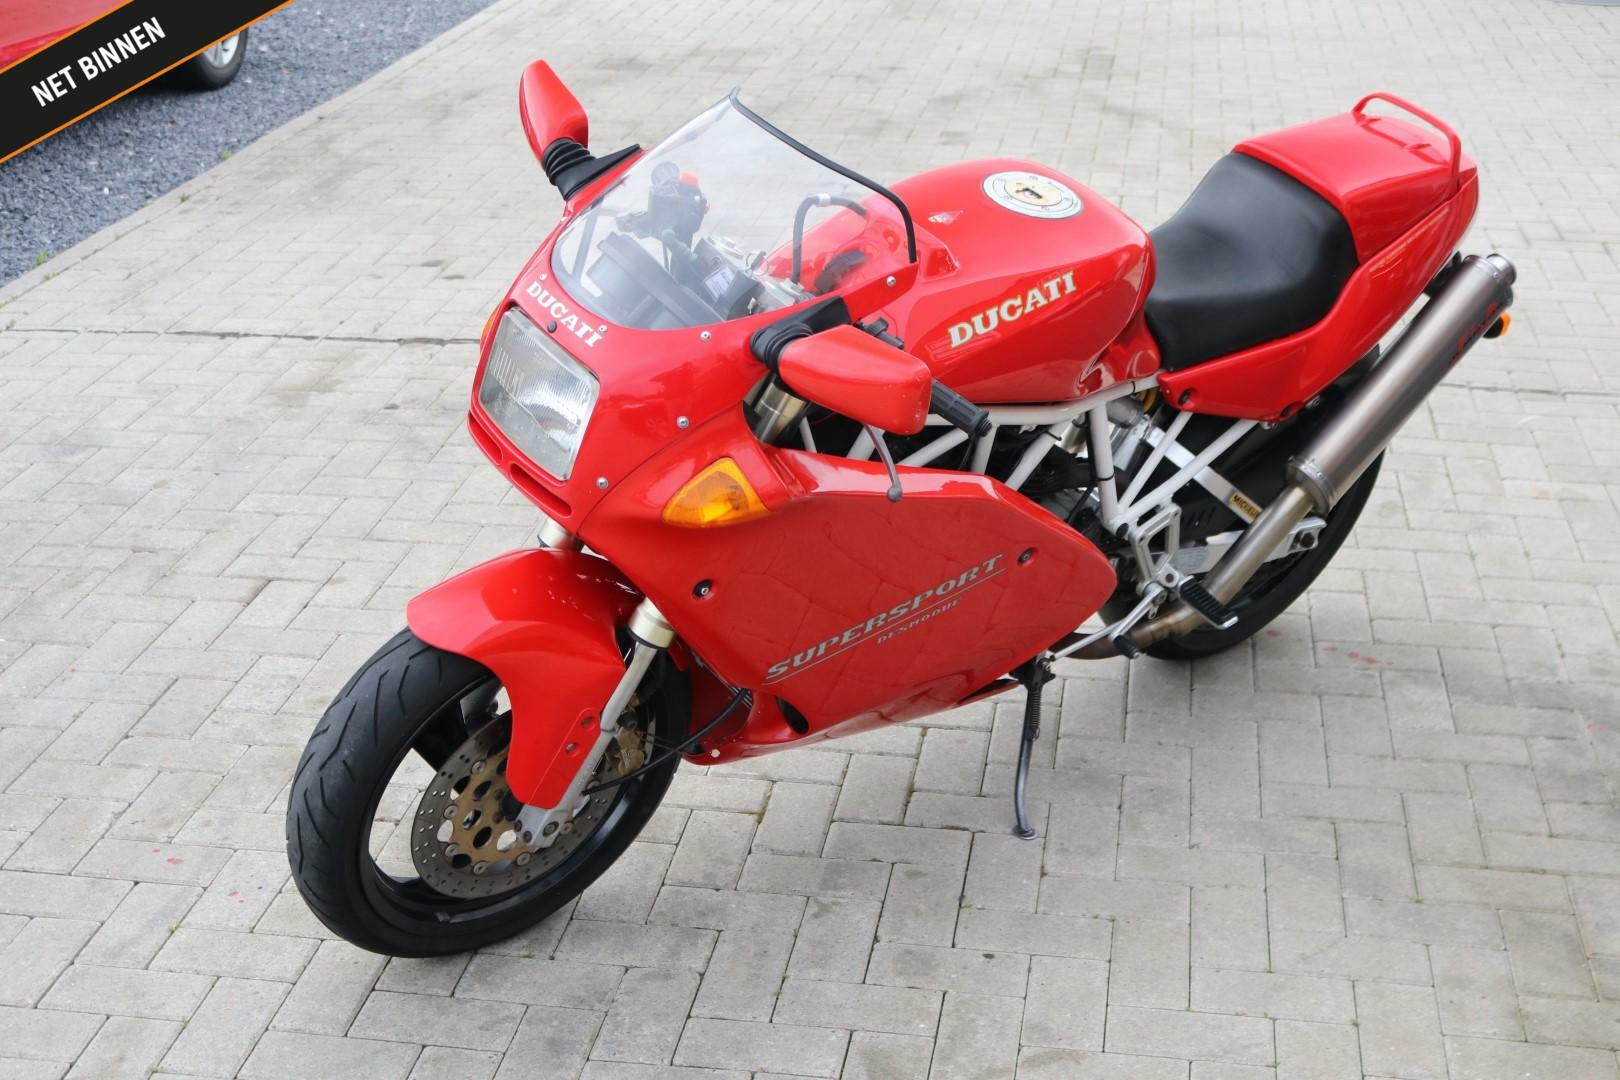 Caroutlet Groningen - Ducati 750 SS | SPORTUITLAAT | 1992 | RIJKLAAR